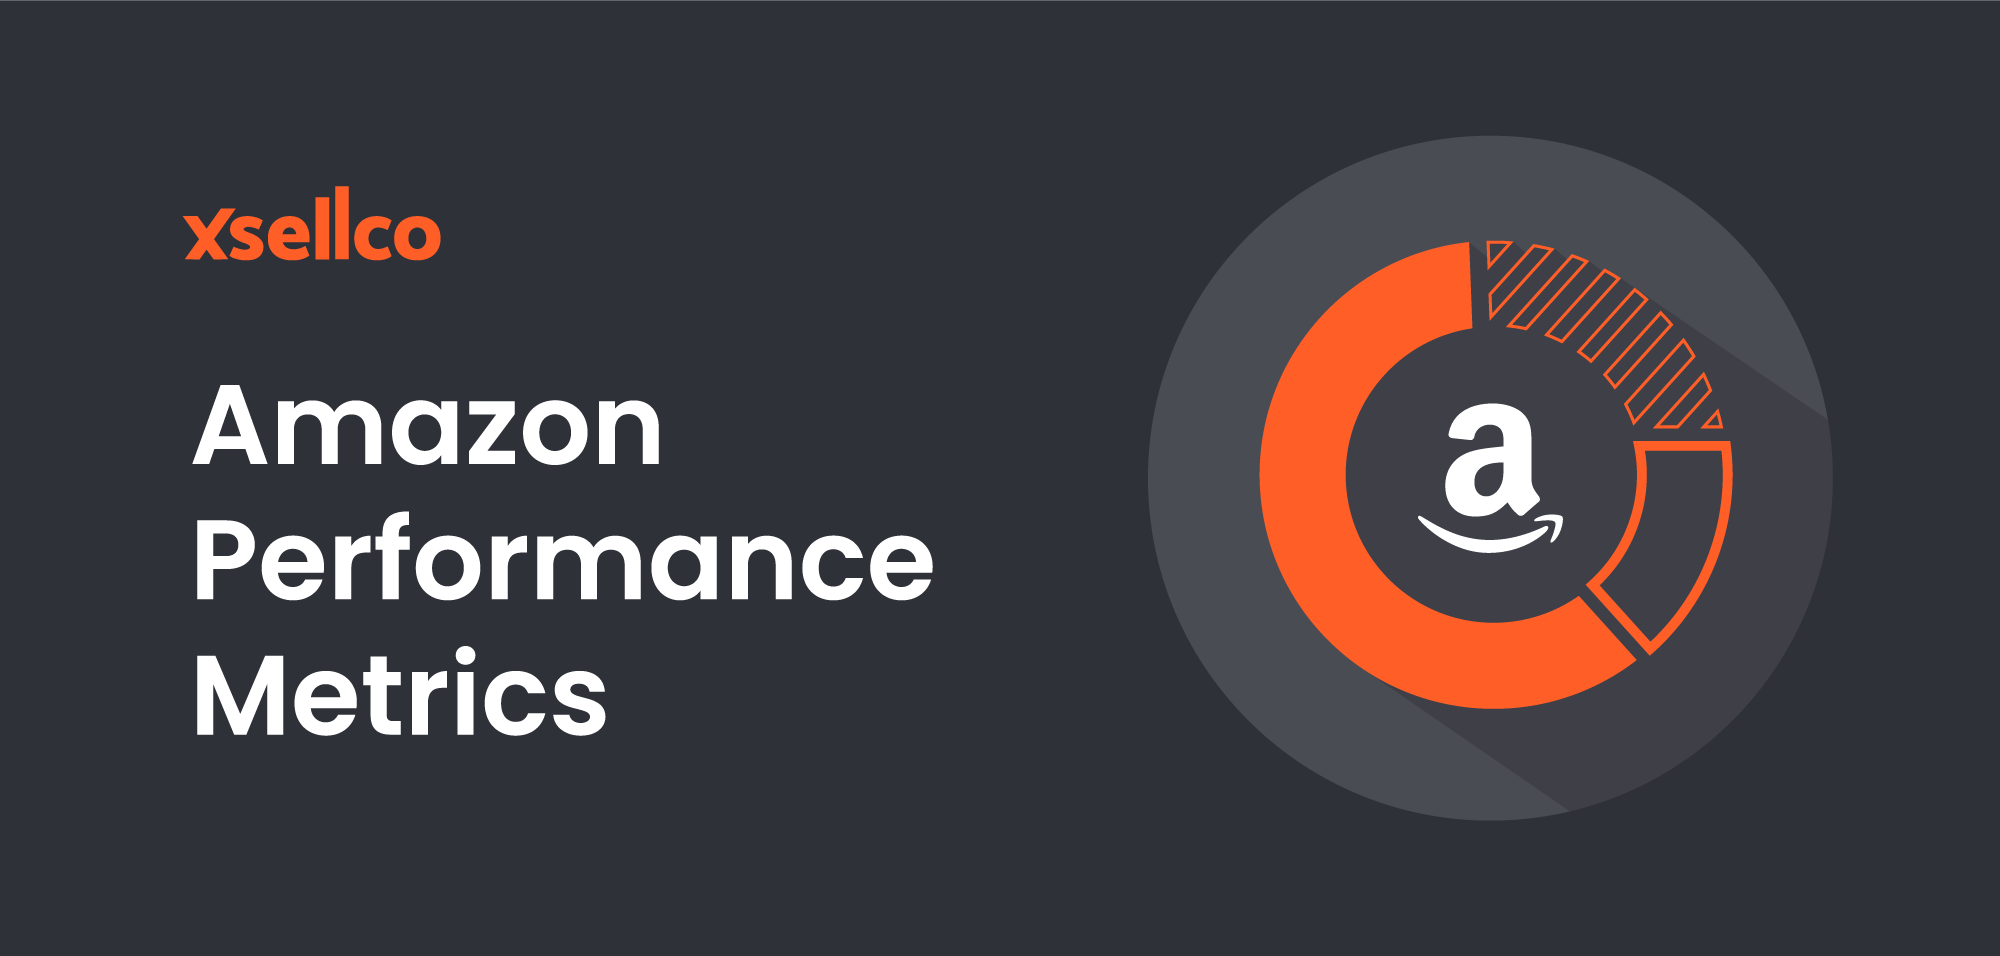 Amazon Performance Metrics